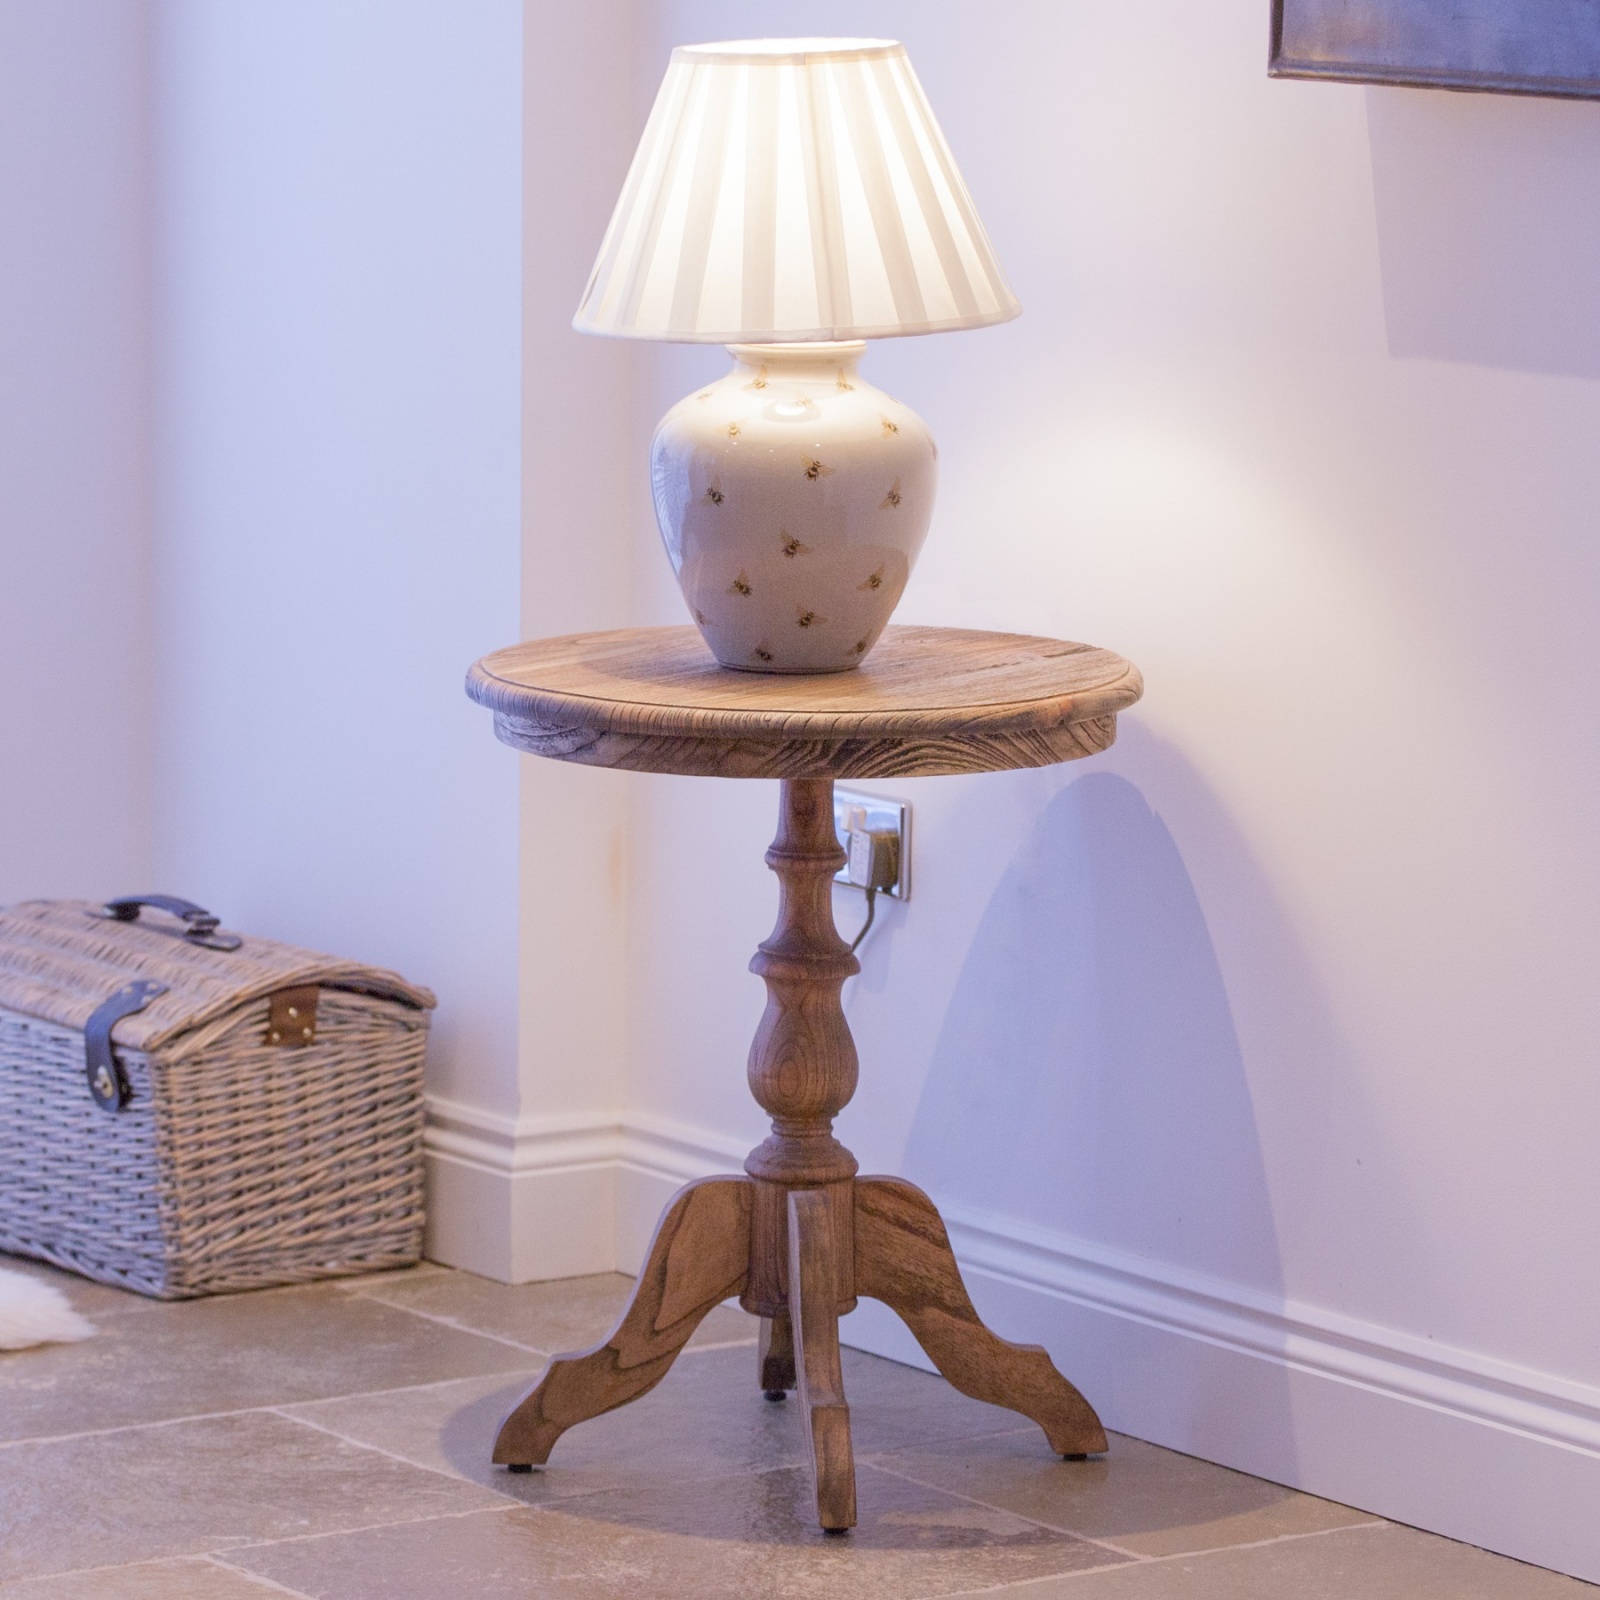 Aged Lourdes Wooden Rustic Side End Lamp Table Furniture - La Maison